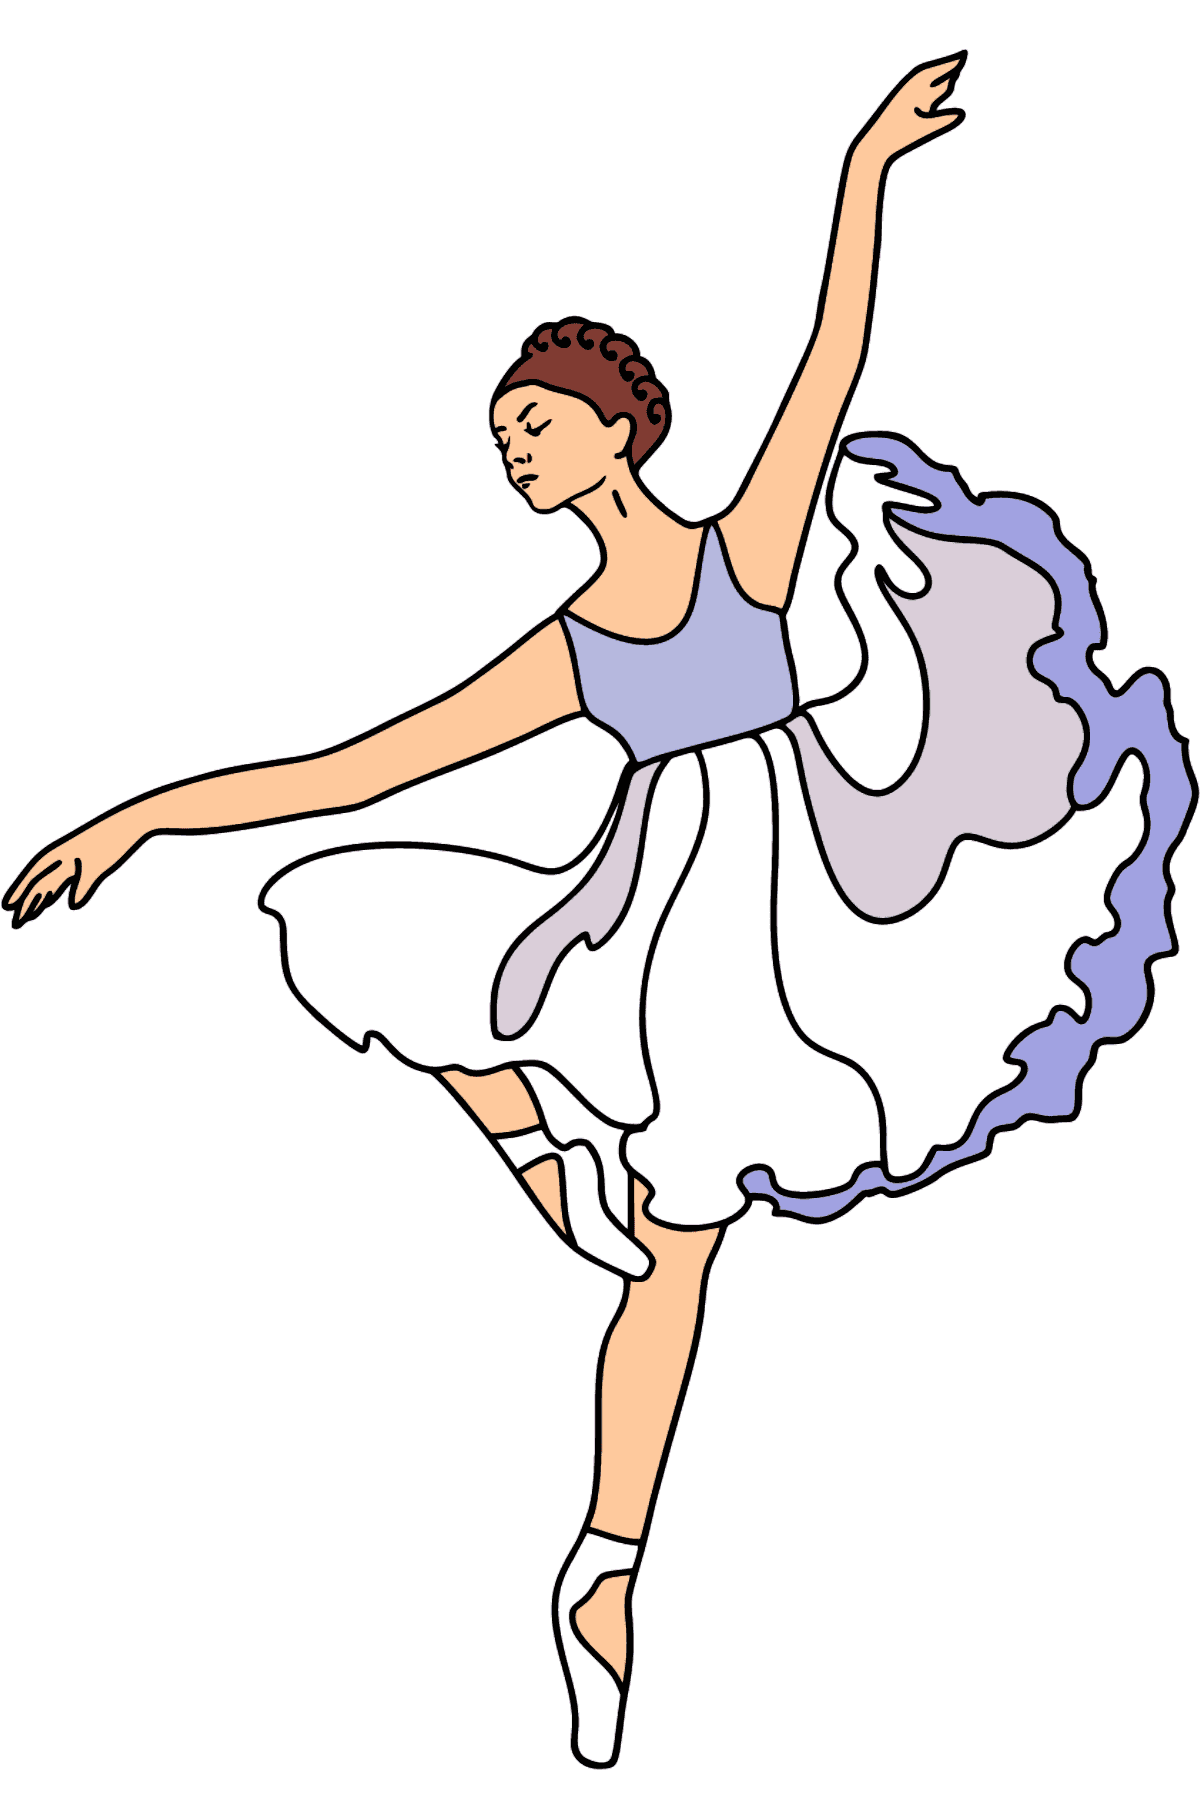 Ballerina i lilla kjole tegning til fargelegging - Tegninger til fargelegging for barn